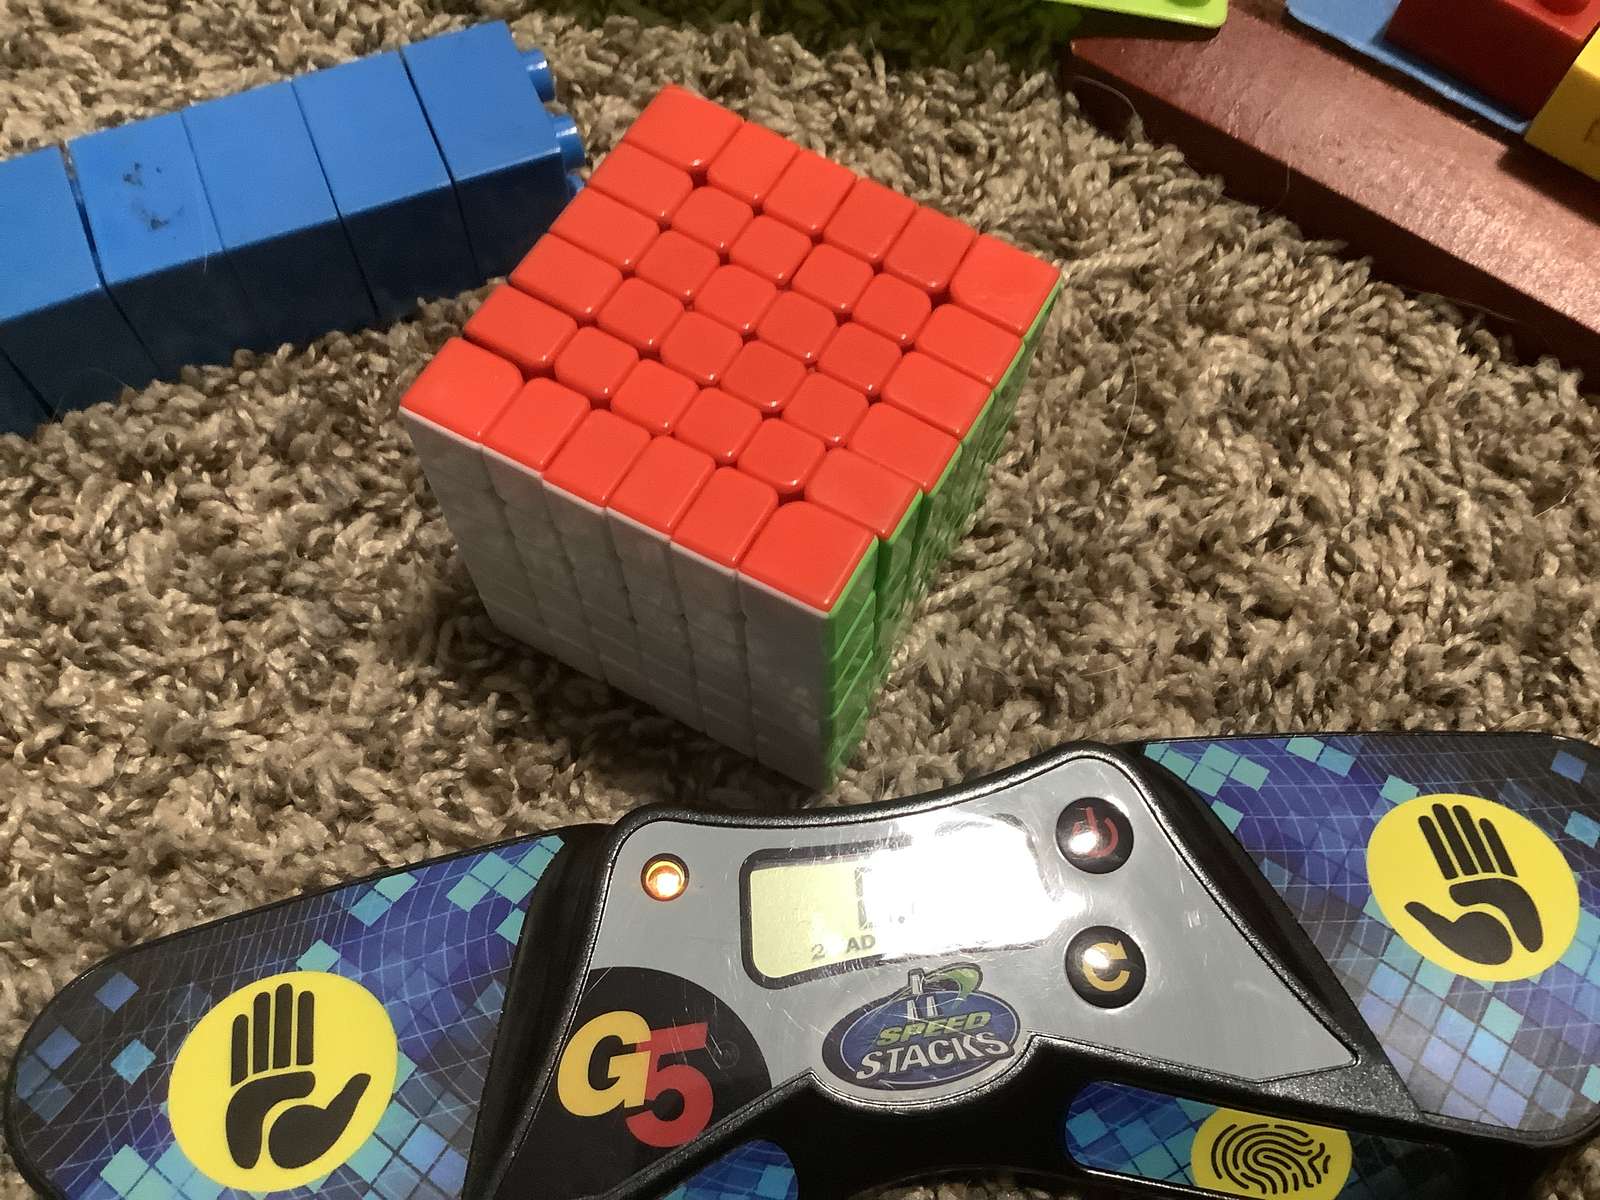 Meu 6x6 está resolvido puzzle online